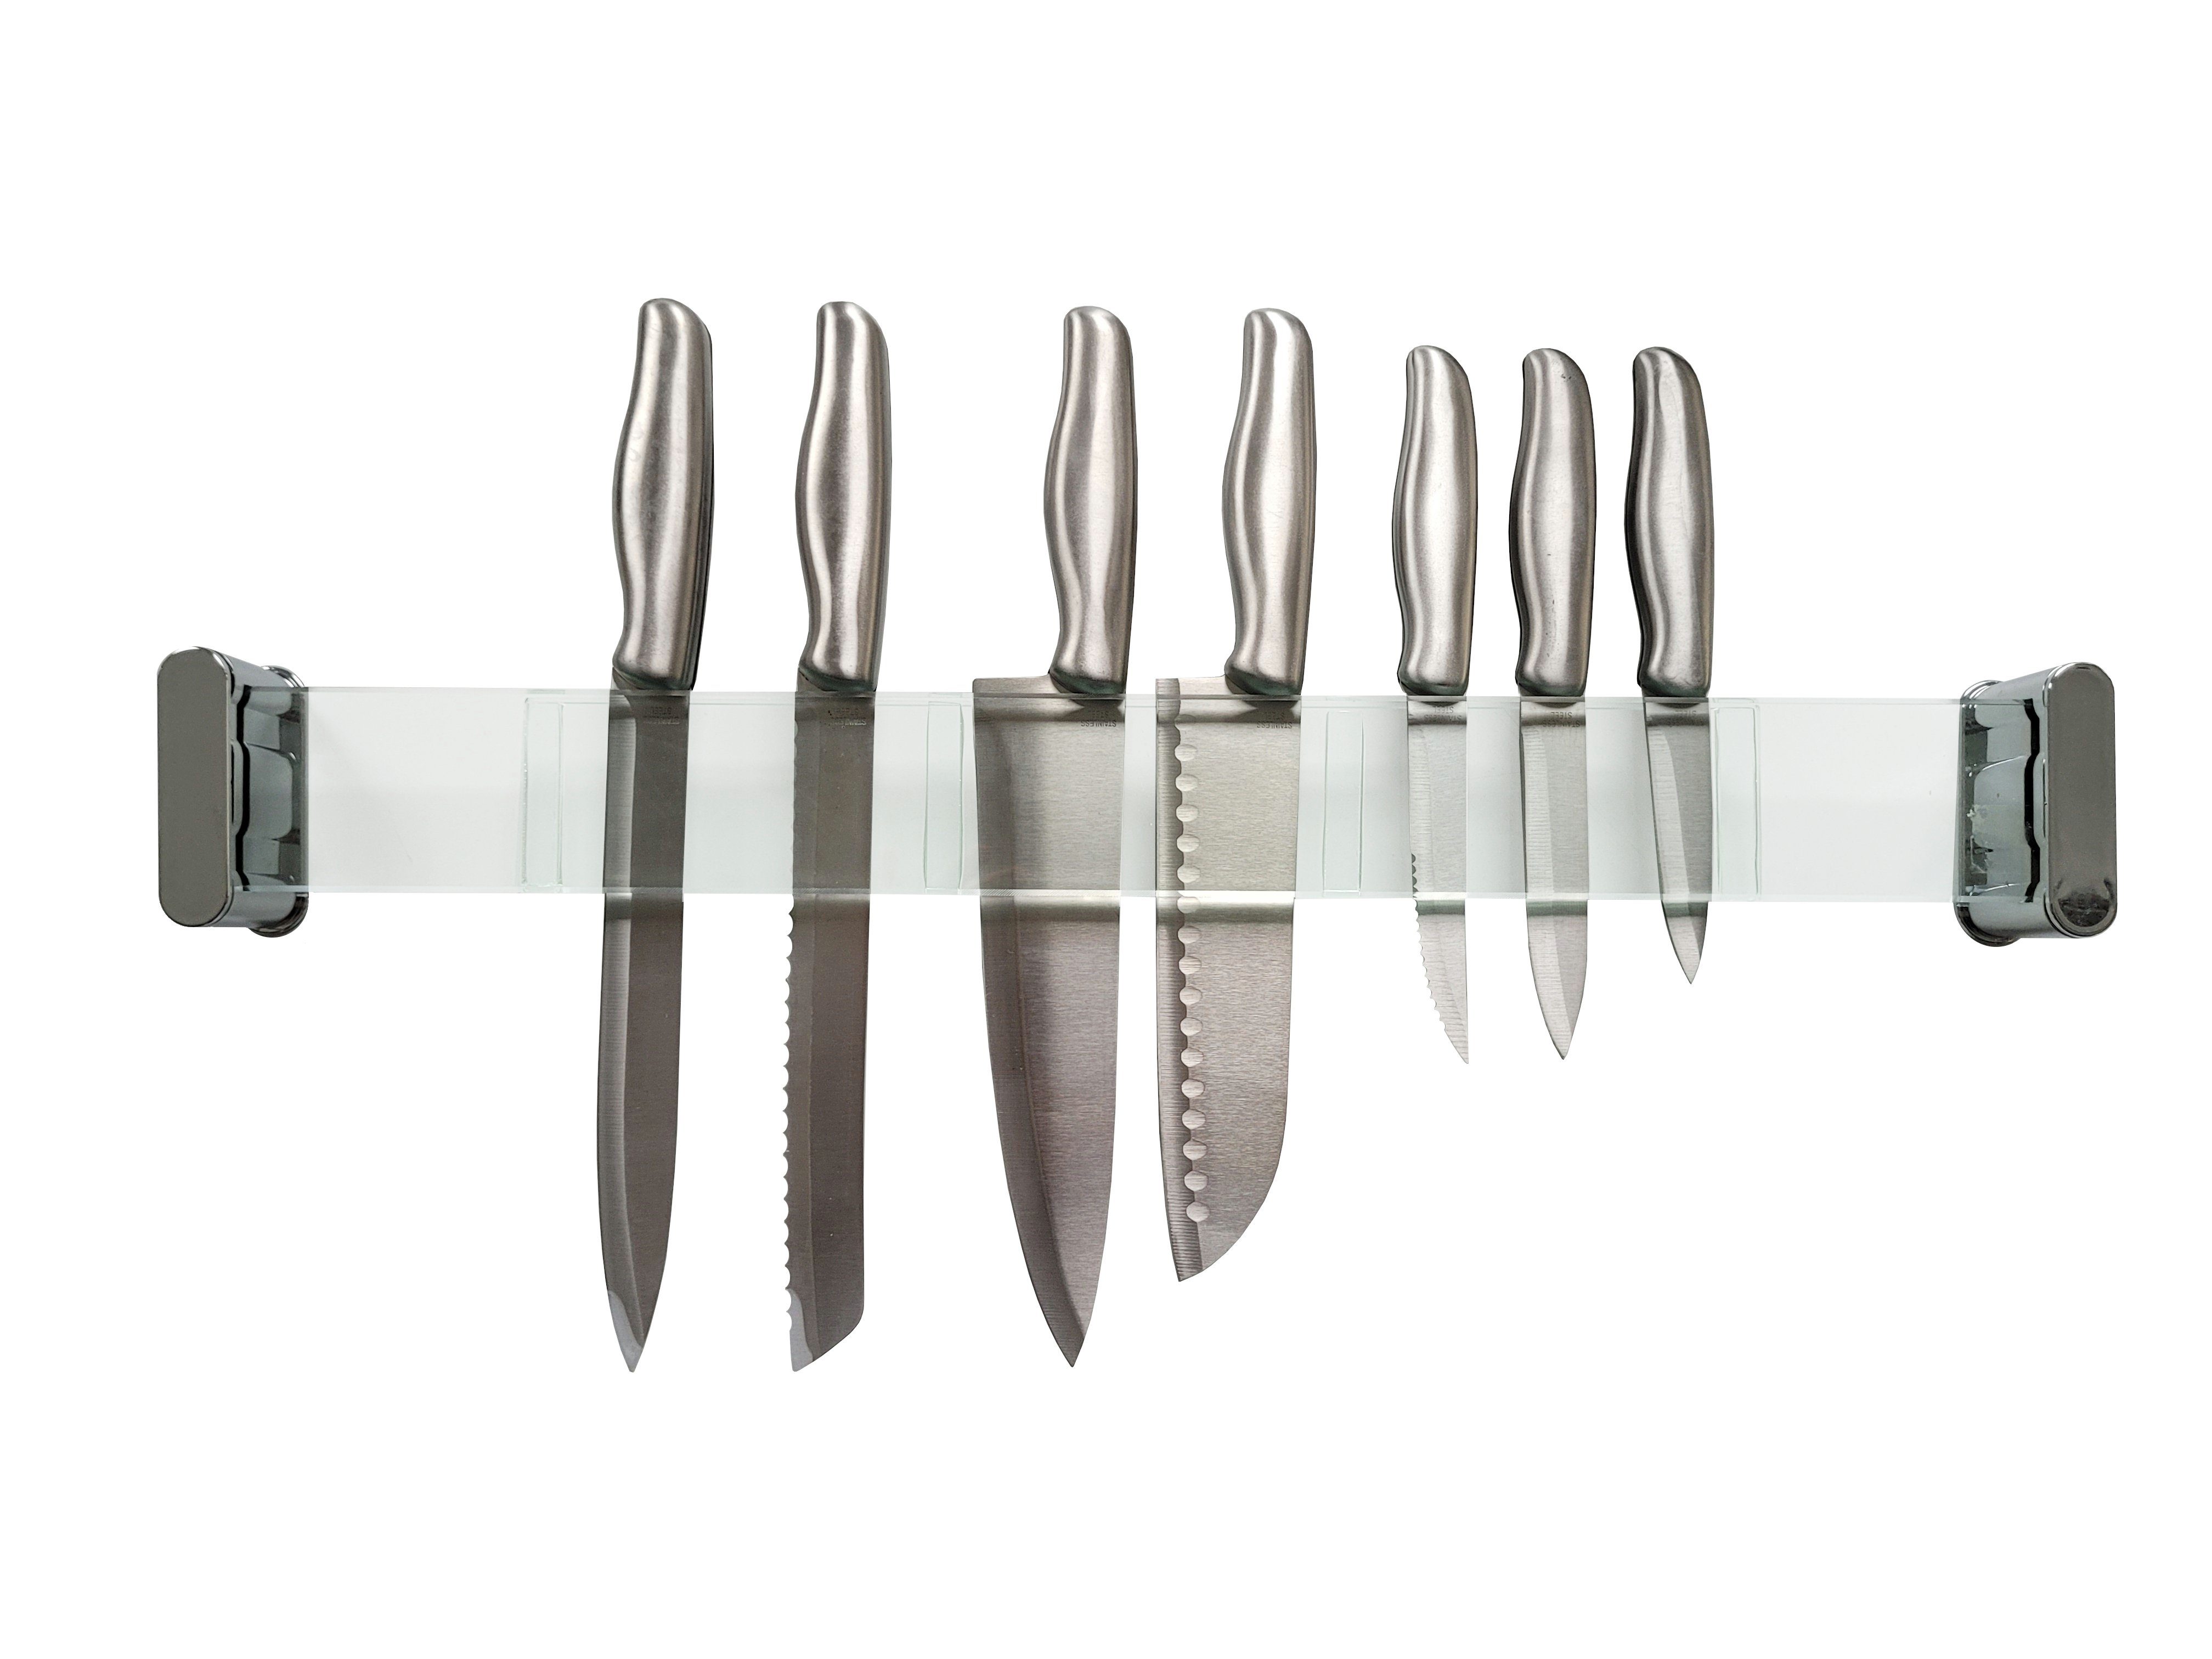 Provance Messerleiste Messerhalter Messerleiste Glas cm 56 Einschubfächer Länge